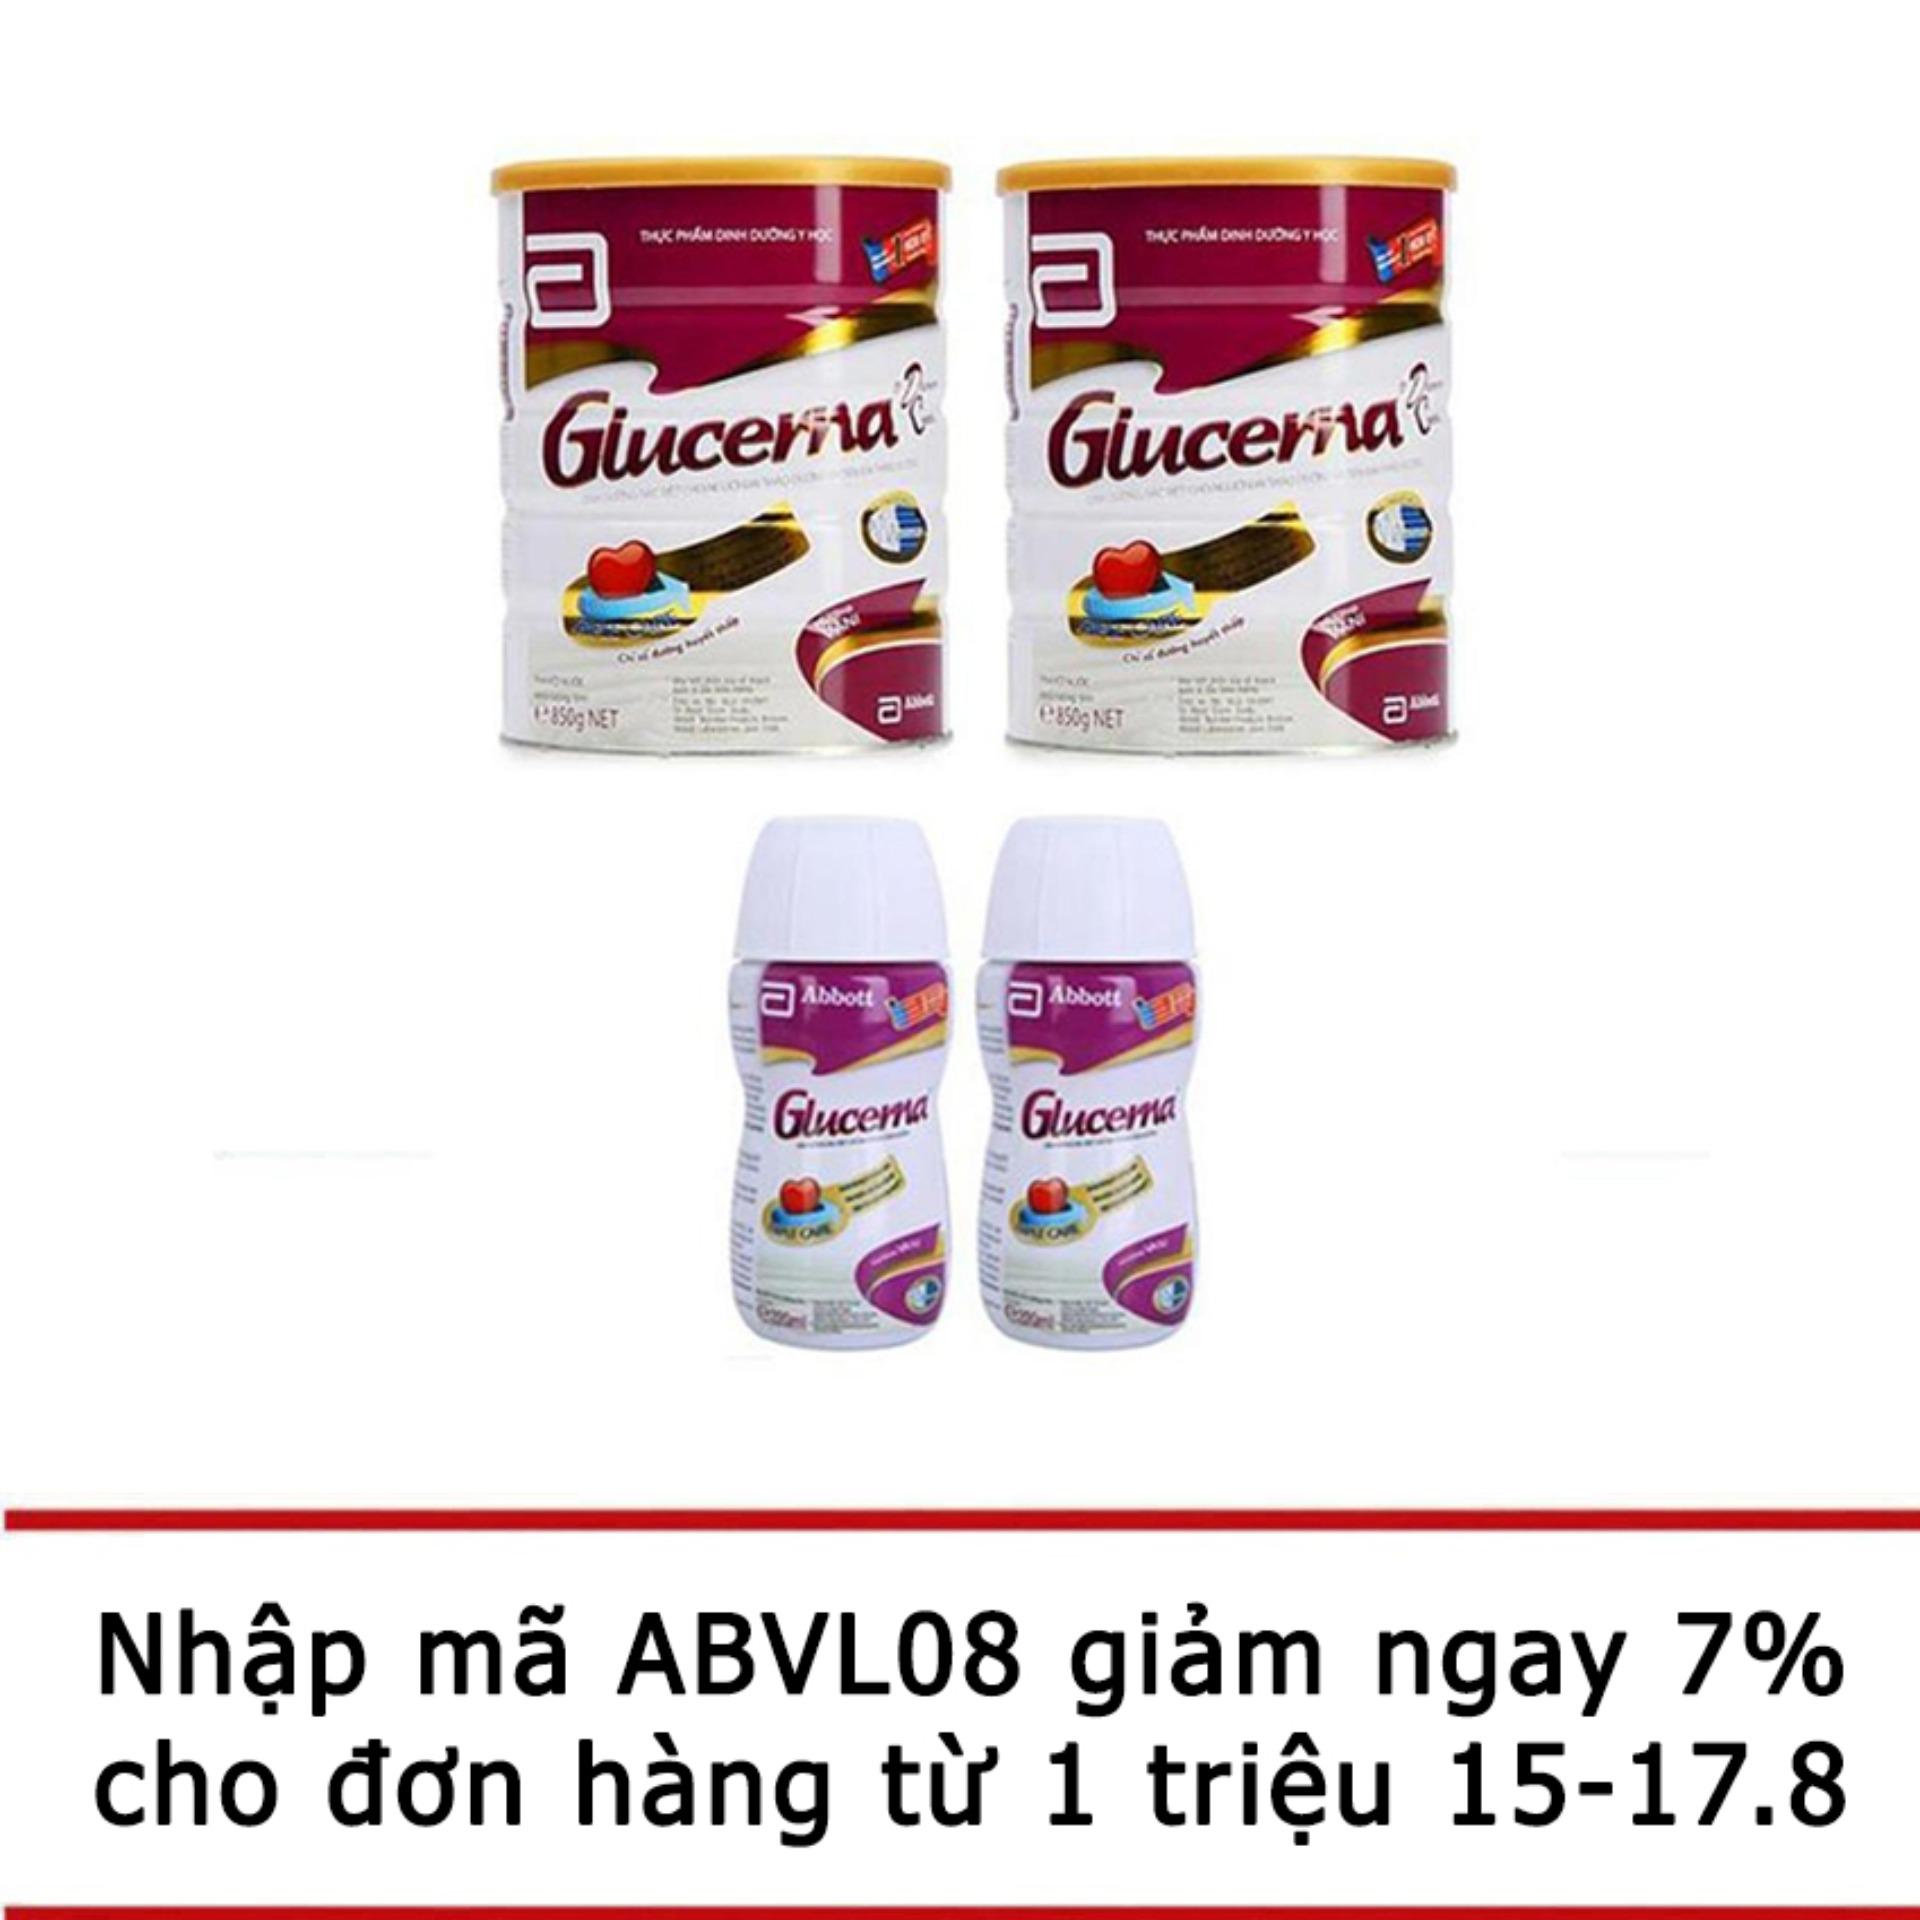 Bộ 2 lon sữa bột Glucerna Hương Vani 850g + 2 chai sữa nước Glucerna hương Vani 220ml